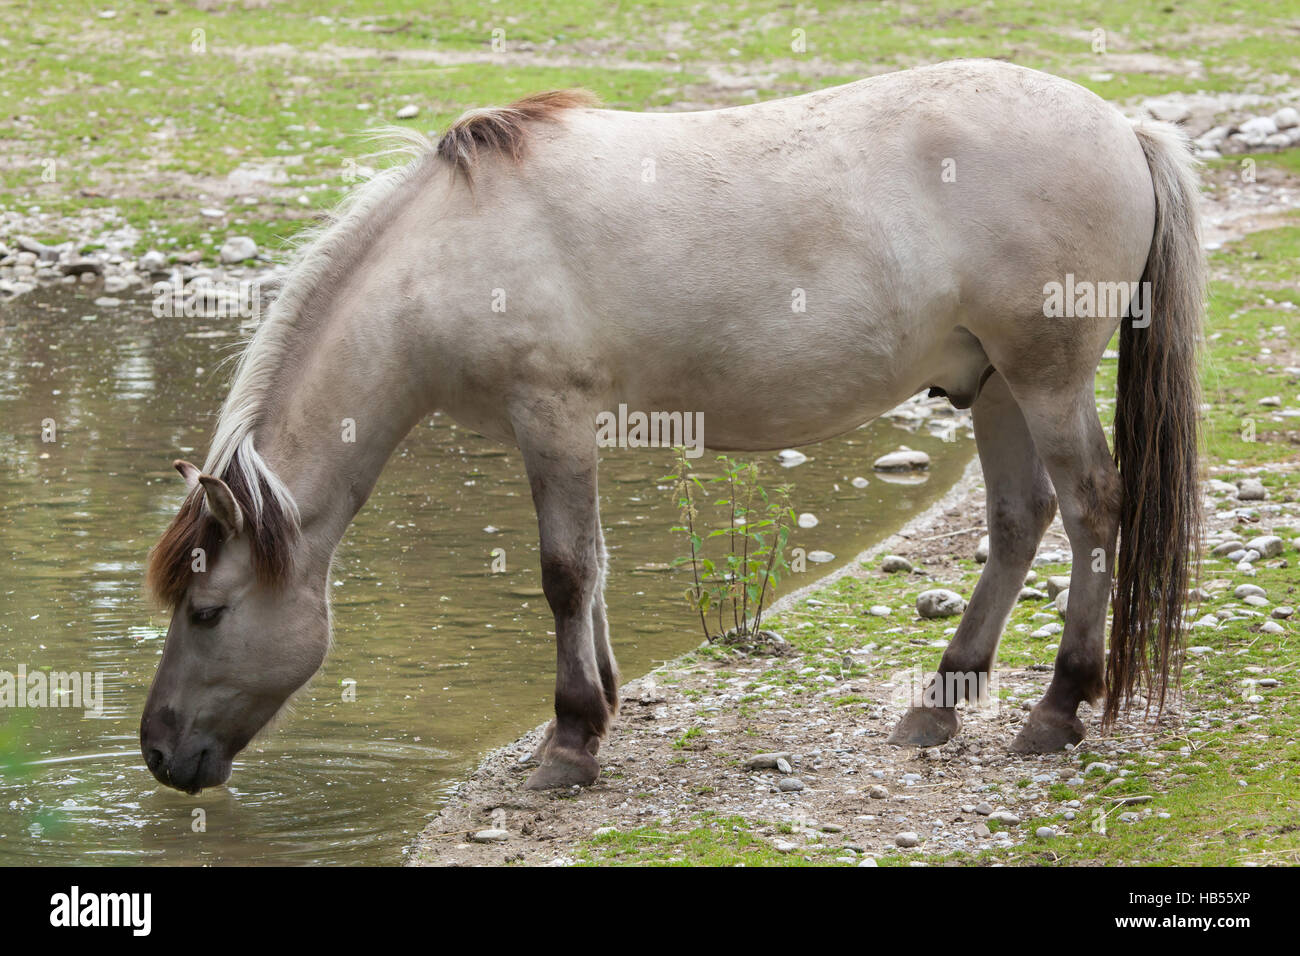 Estacade à cheval (Equus ferus caballus), réclamé pour ressembler à la disparue tarpan (Equus ferus ferus) au zoo Hellabrunn de Munich, Bavière, Allemagne. Banque D'Images